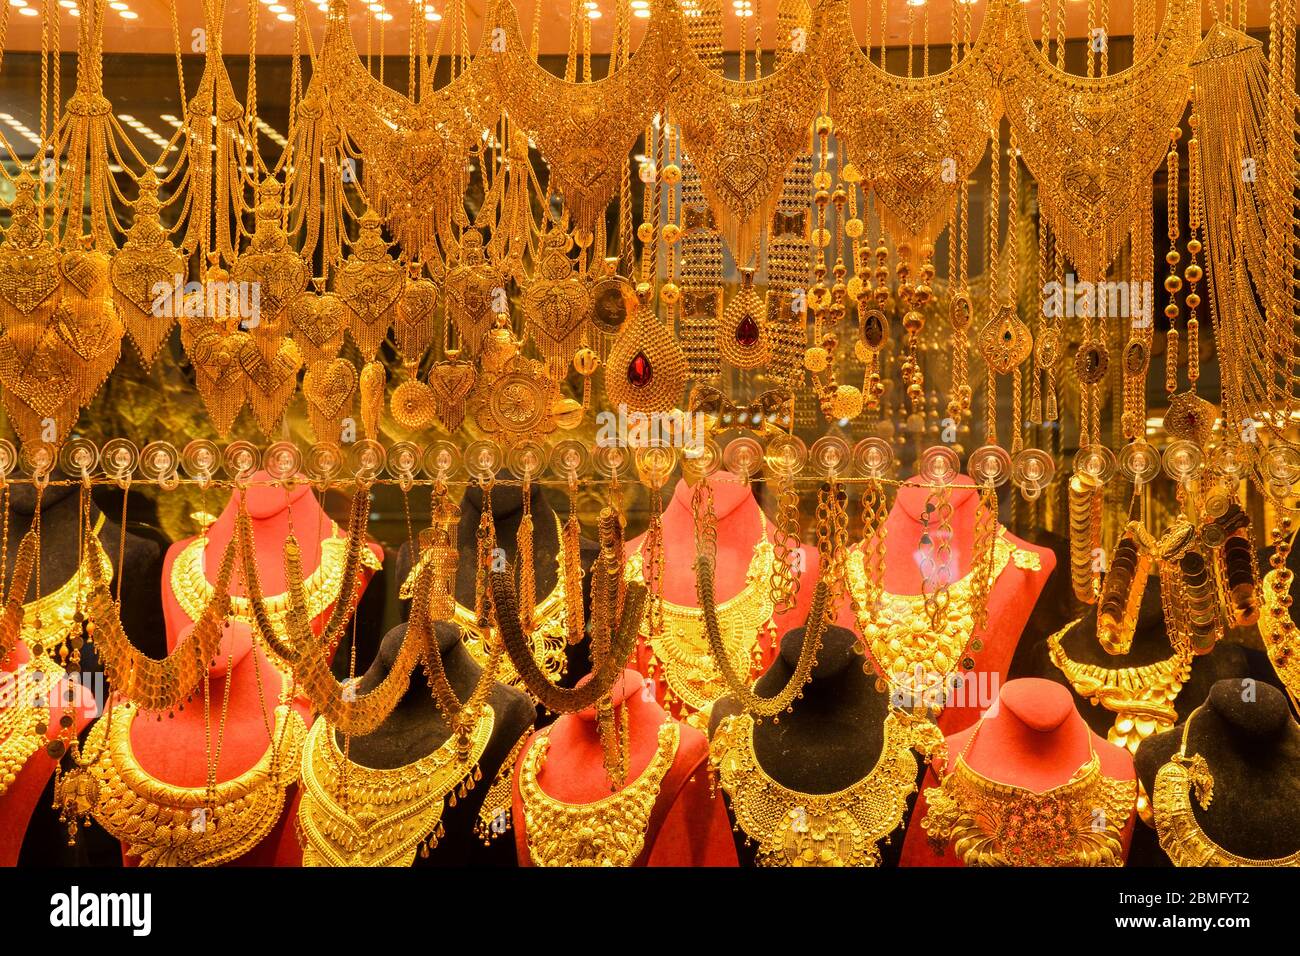 Goldschmuck auf dem orientalischen Basar in Istanbul, Souvenirs, Geschenke,  Reisen Stockfotografie - Alamy